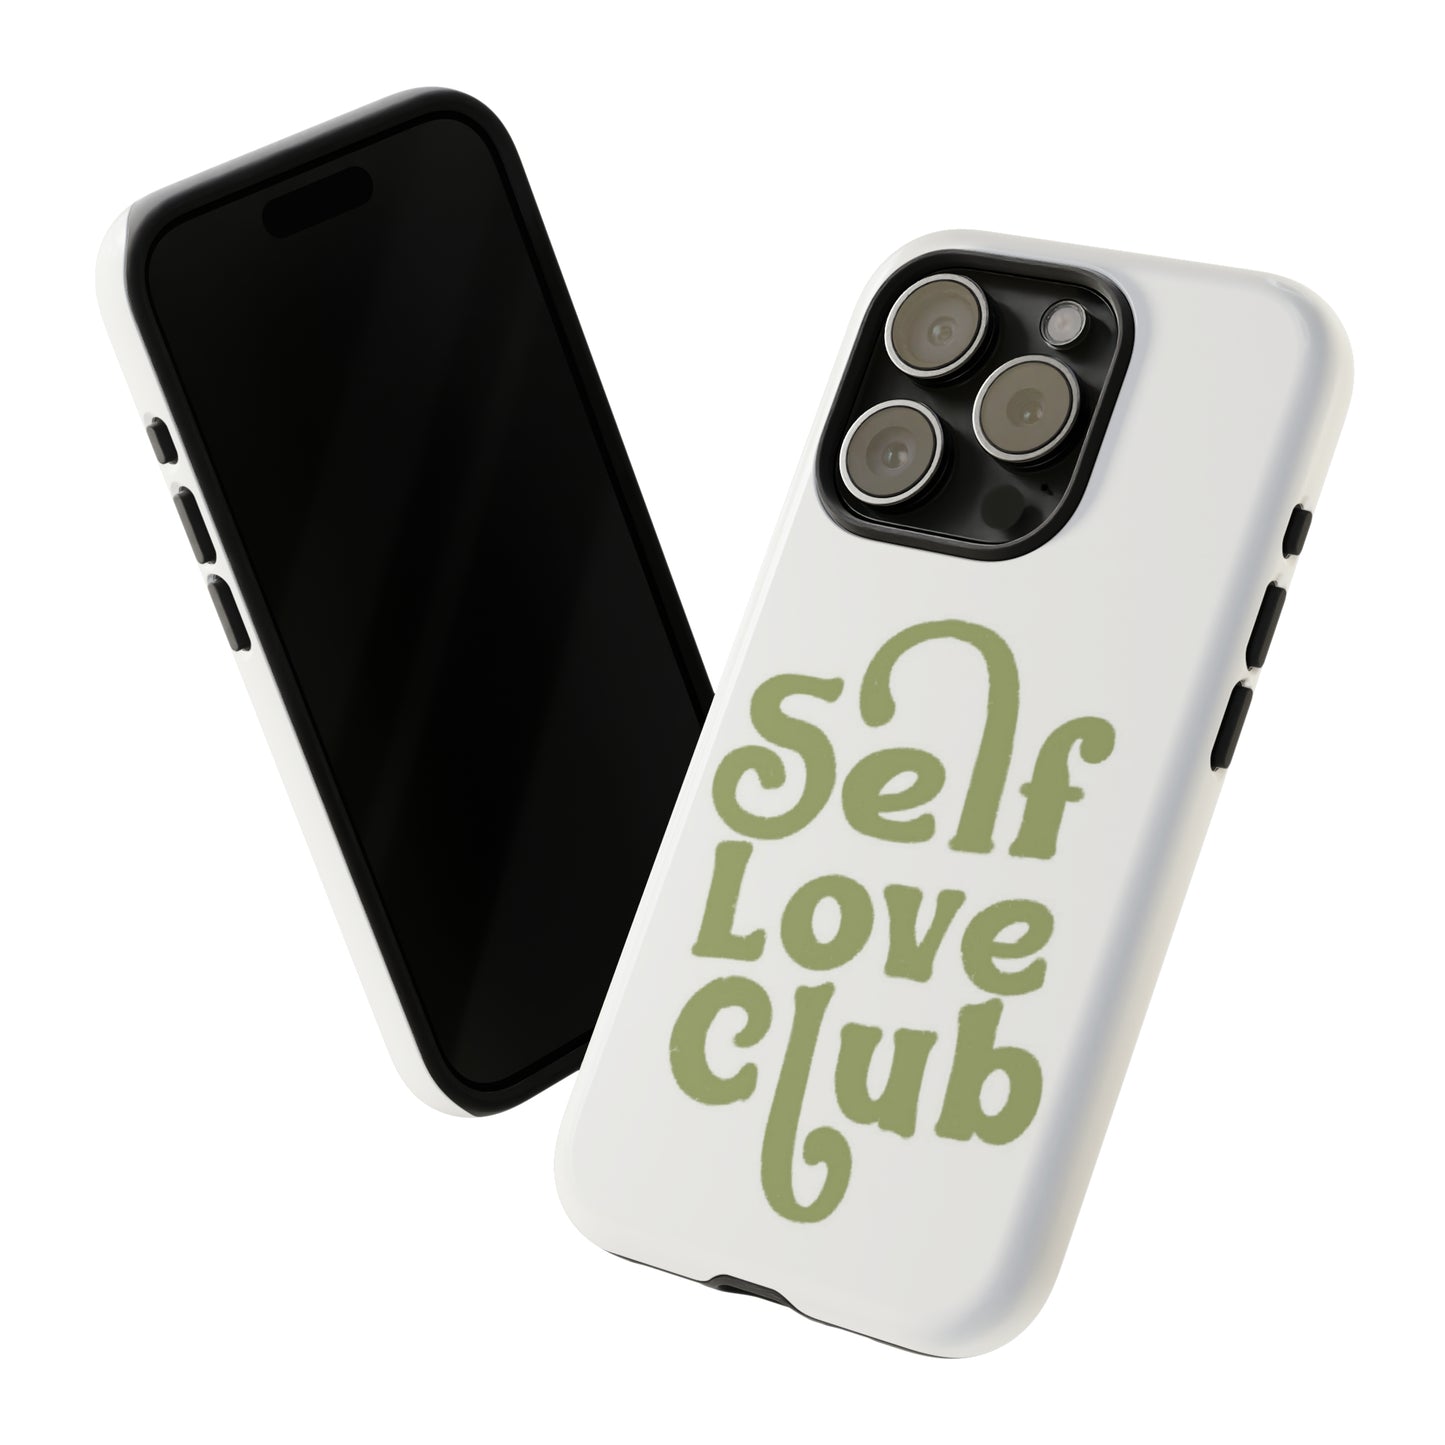 Self Love Phone Case